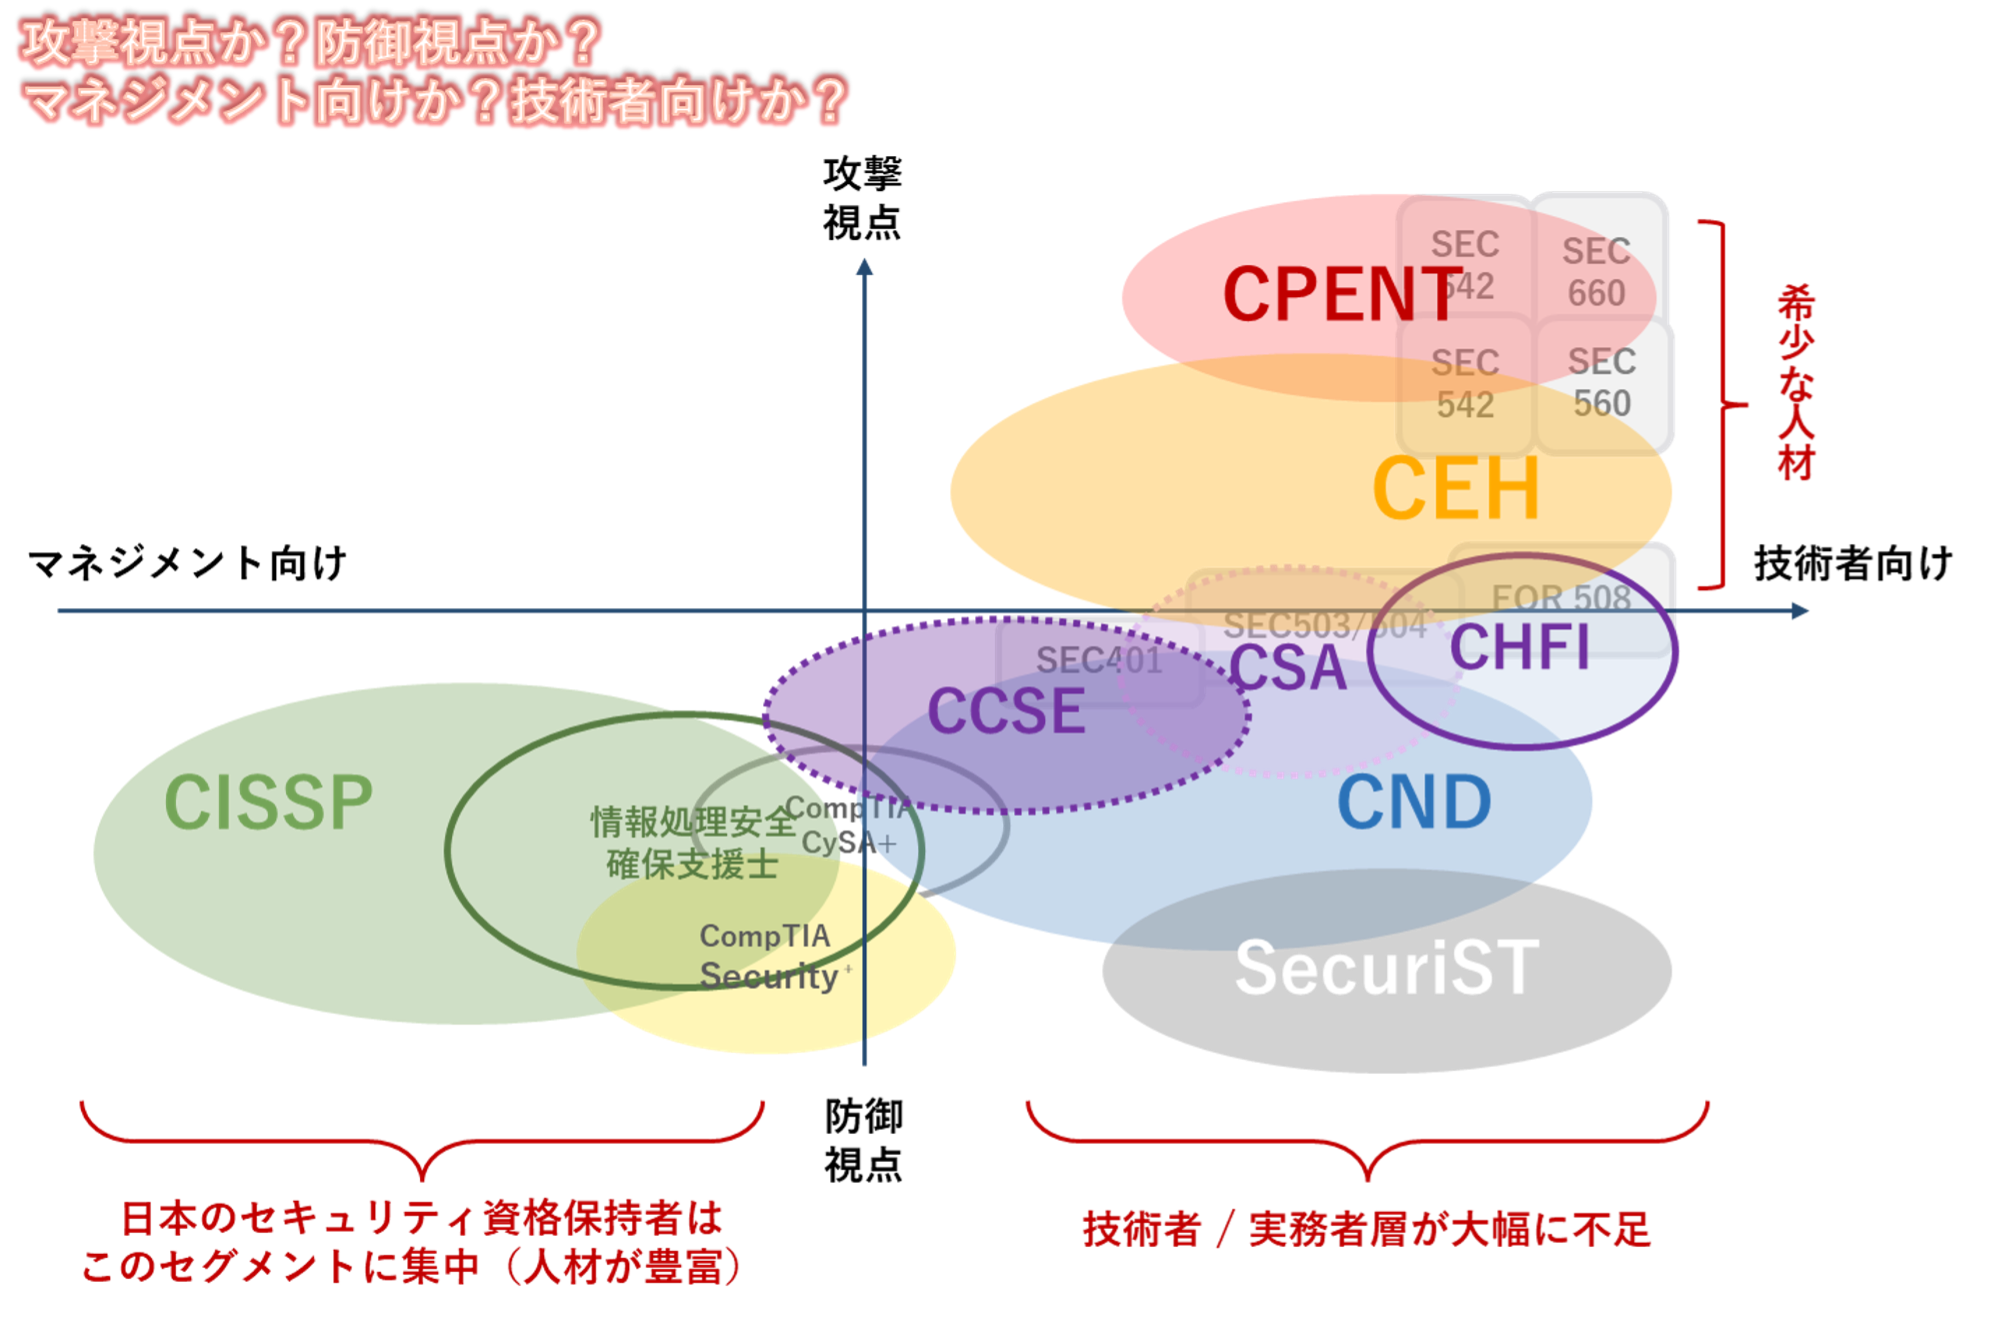 GSXが提供しているサイバーセキュリティ資格の位置づけ